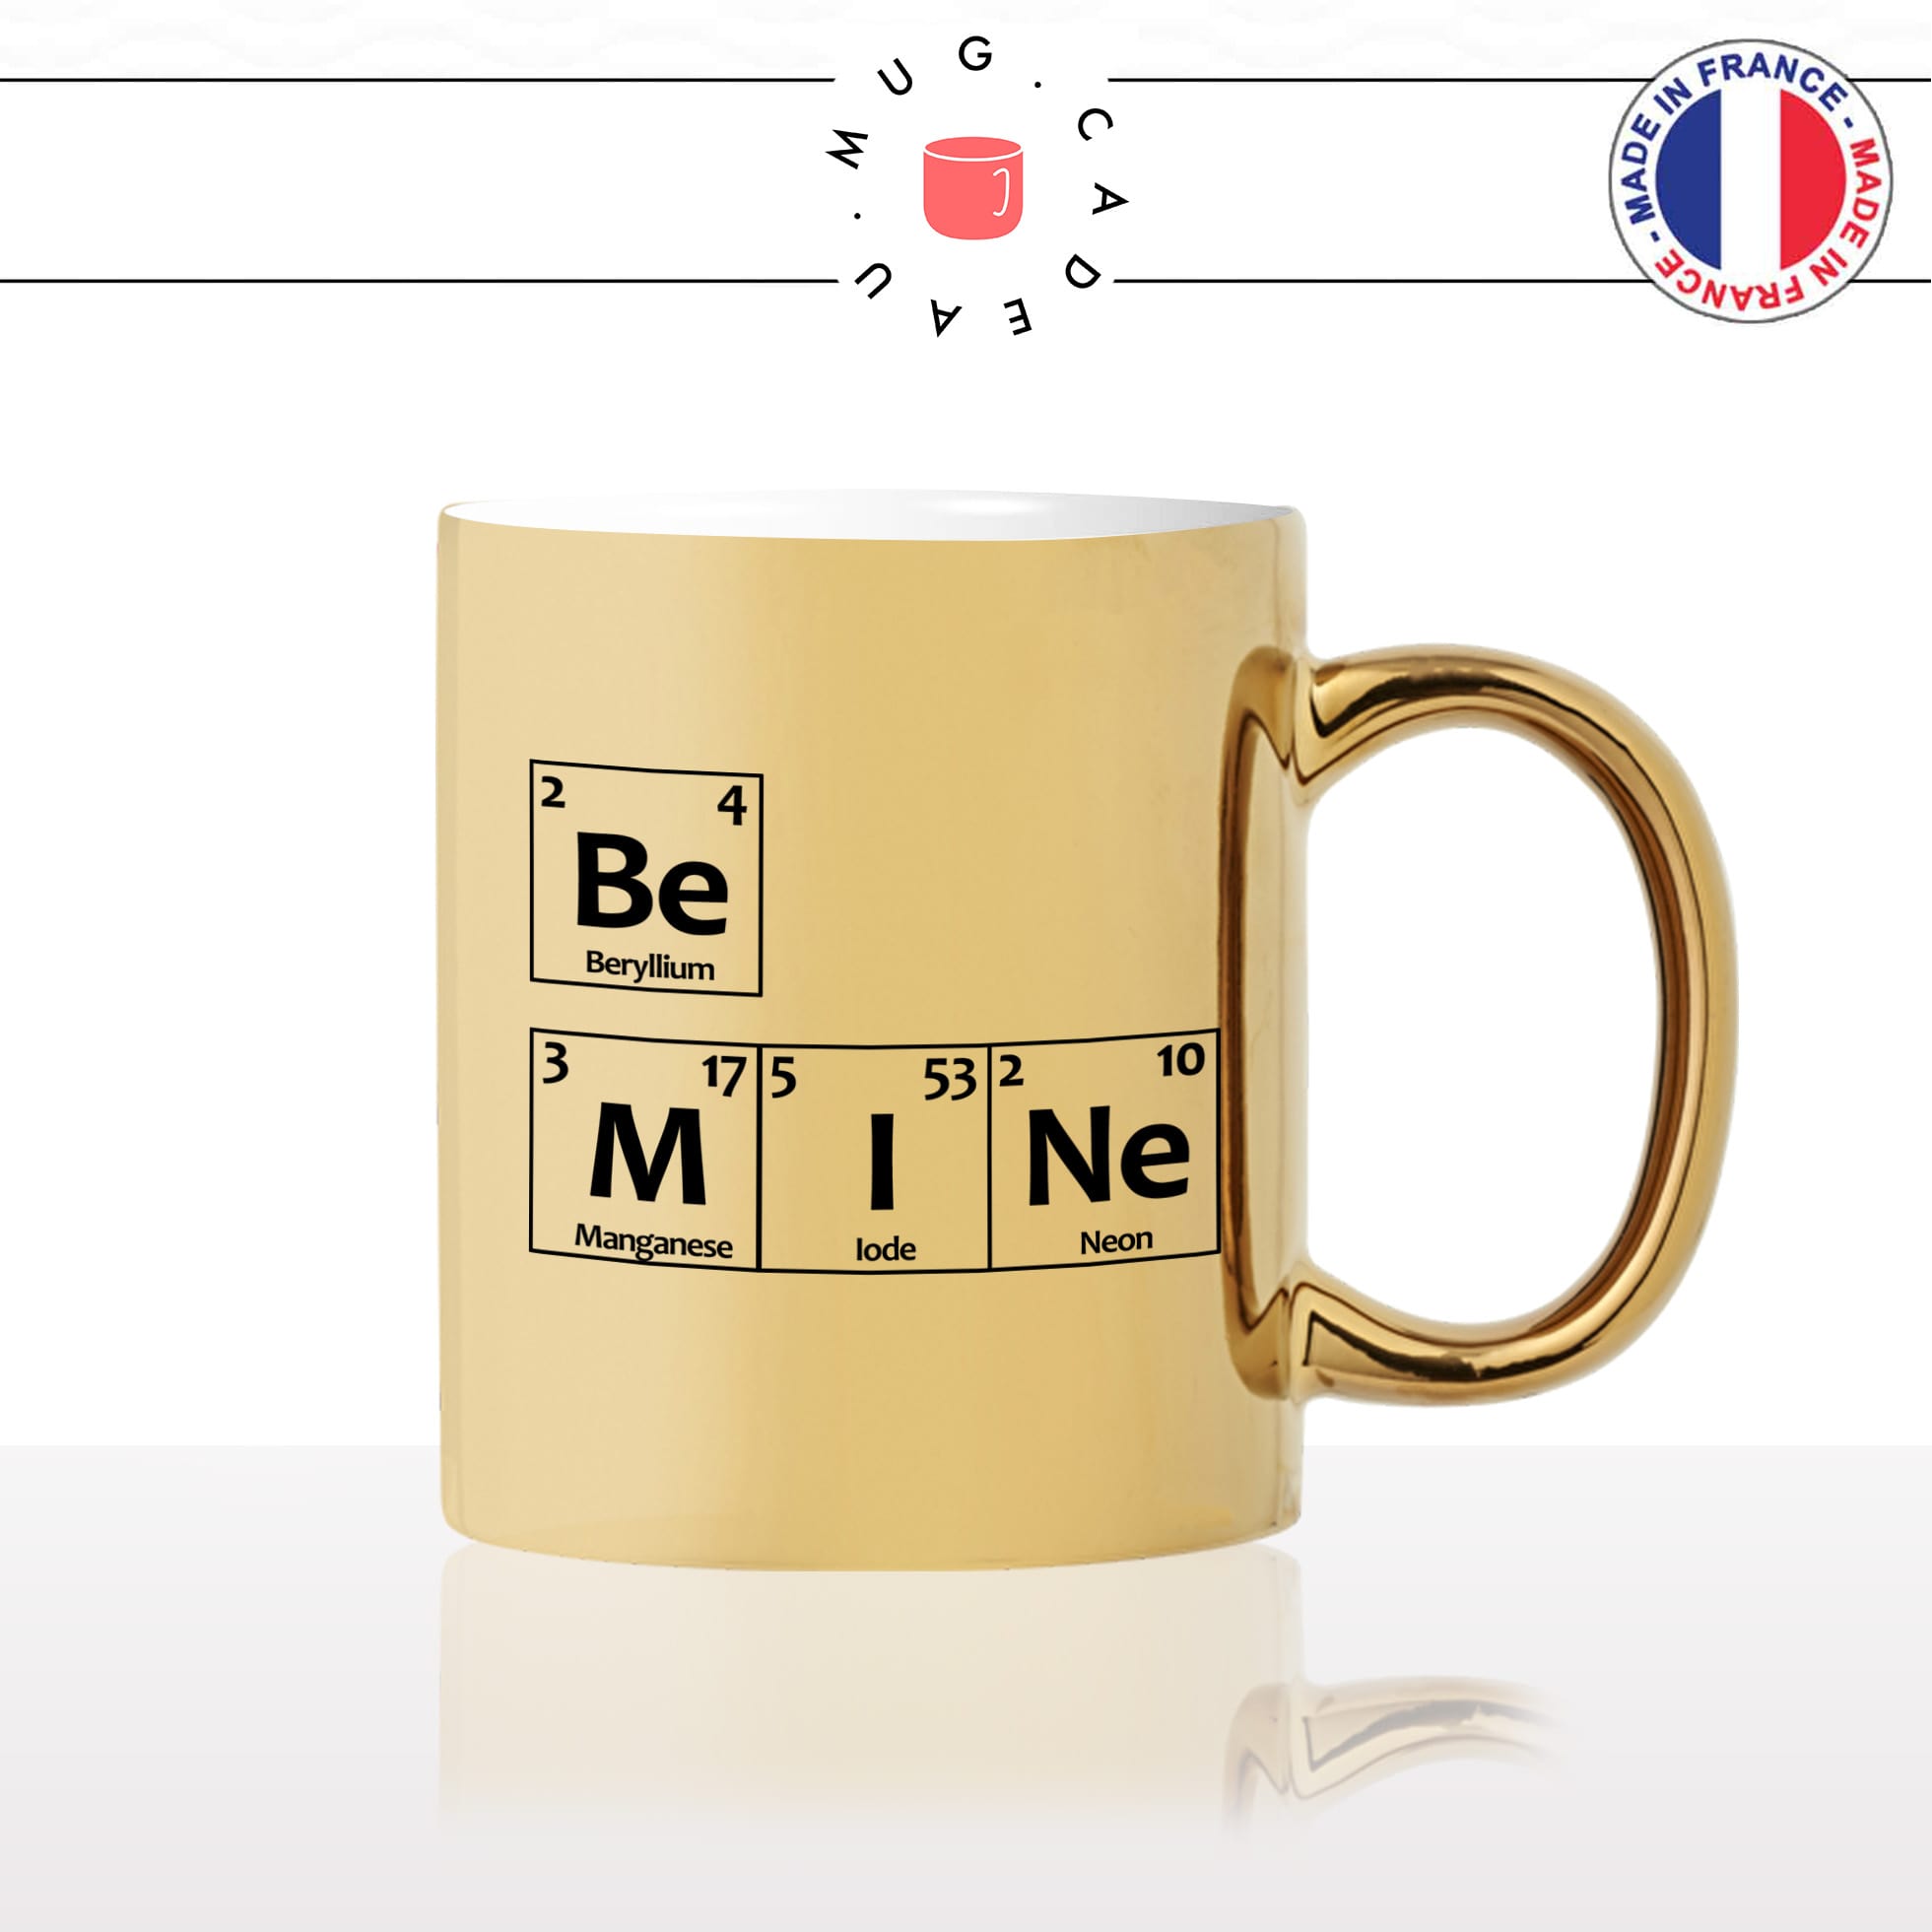 mug-tasse-or-doré-be-mine-geek-science-élément-couple-st-valentin-je-taime-amour-couple-café-thé-idée-cadeau-original-personnalisé2-min